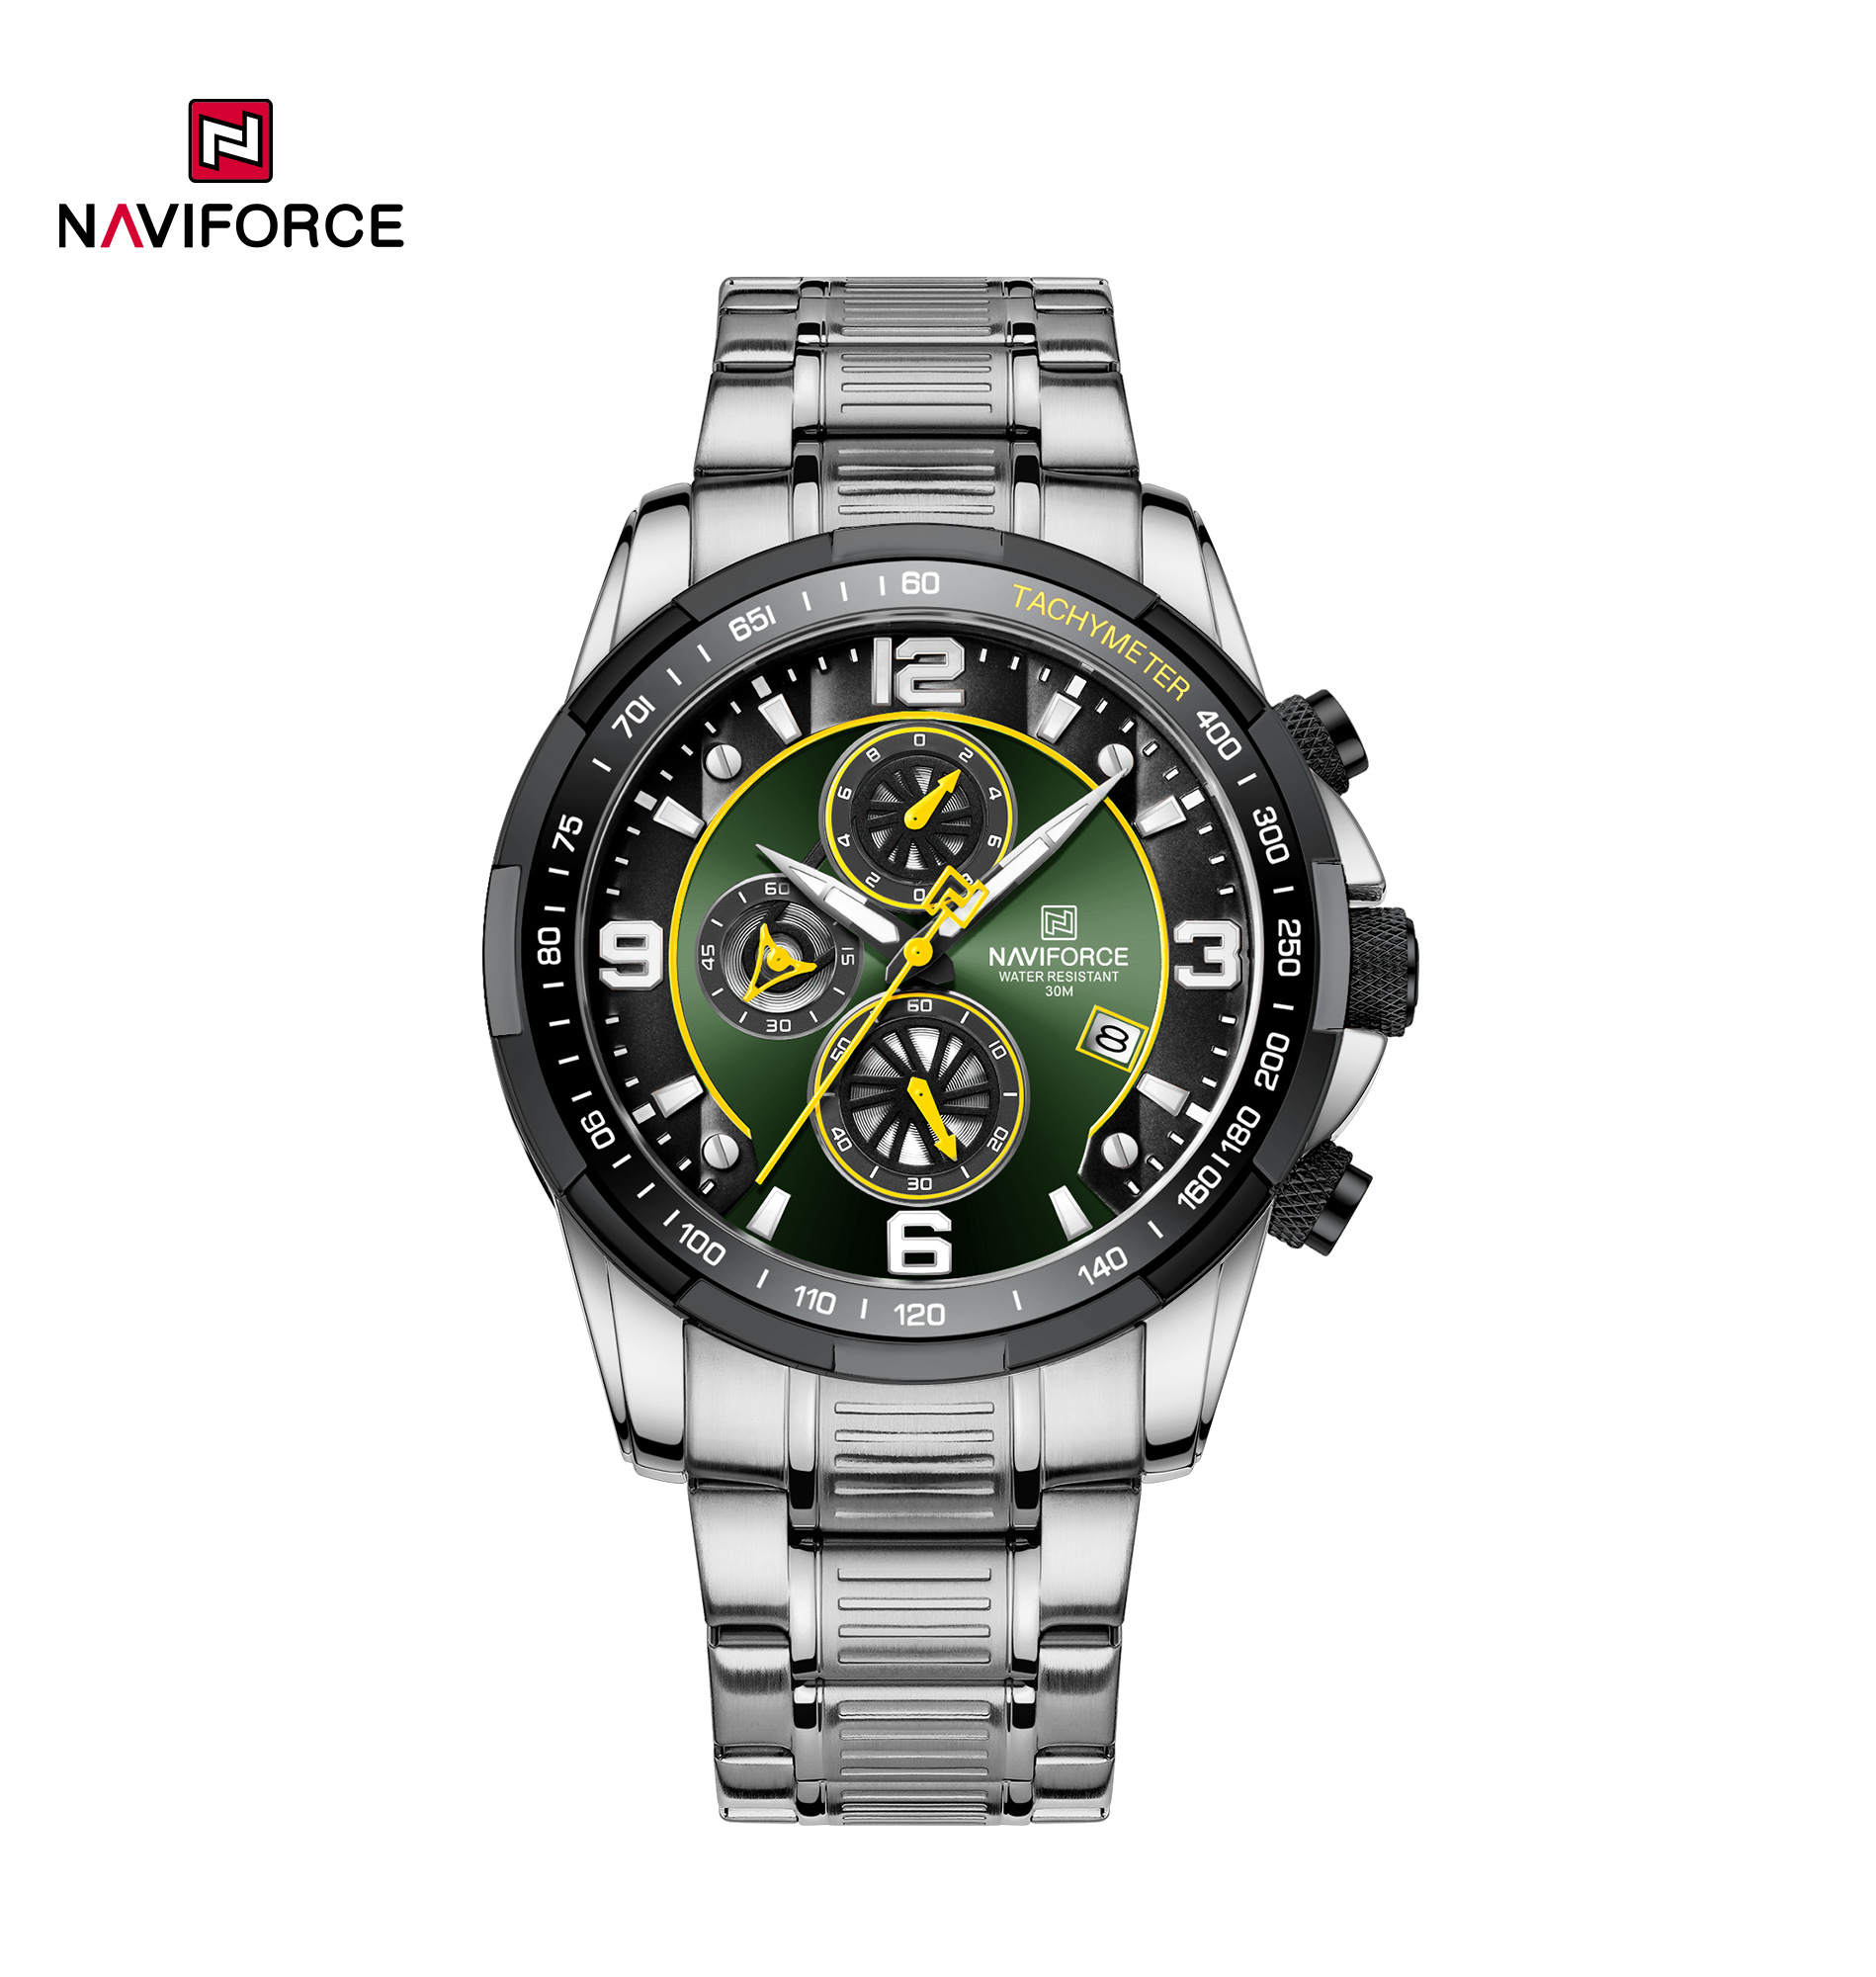 NAVIFORCE NF8020S correa de acero inoxidable luminoso impermeable hombres moda carreras de cuarzo cronógrafo hombres reloj